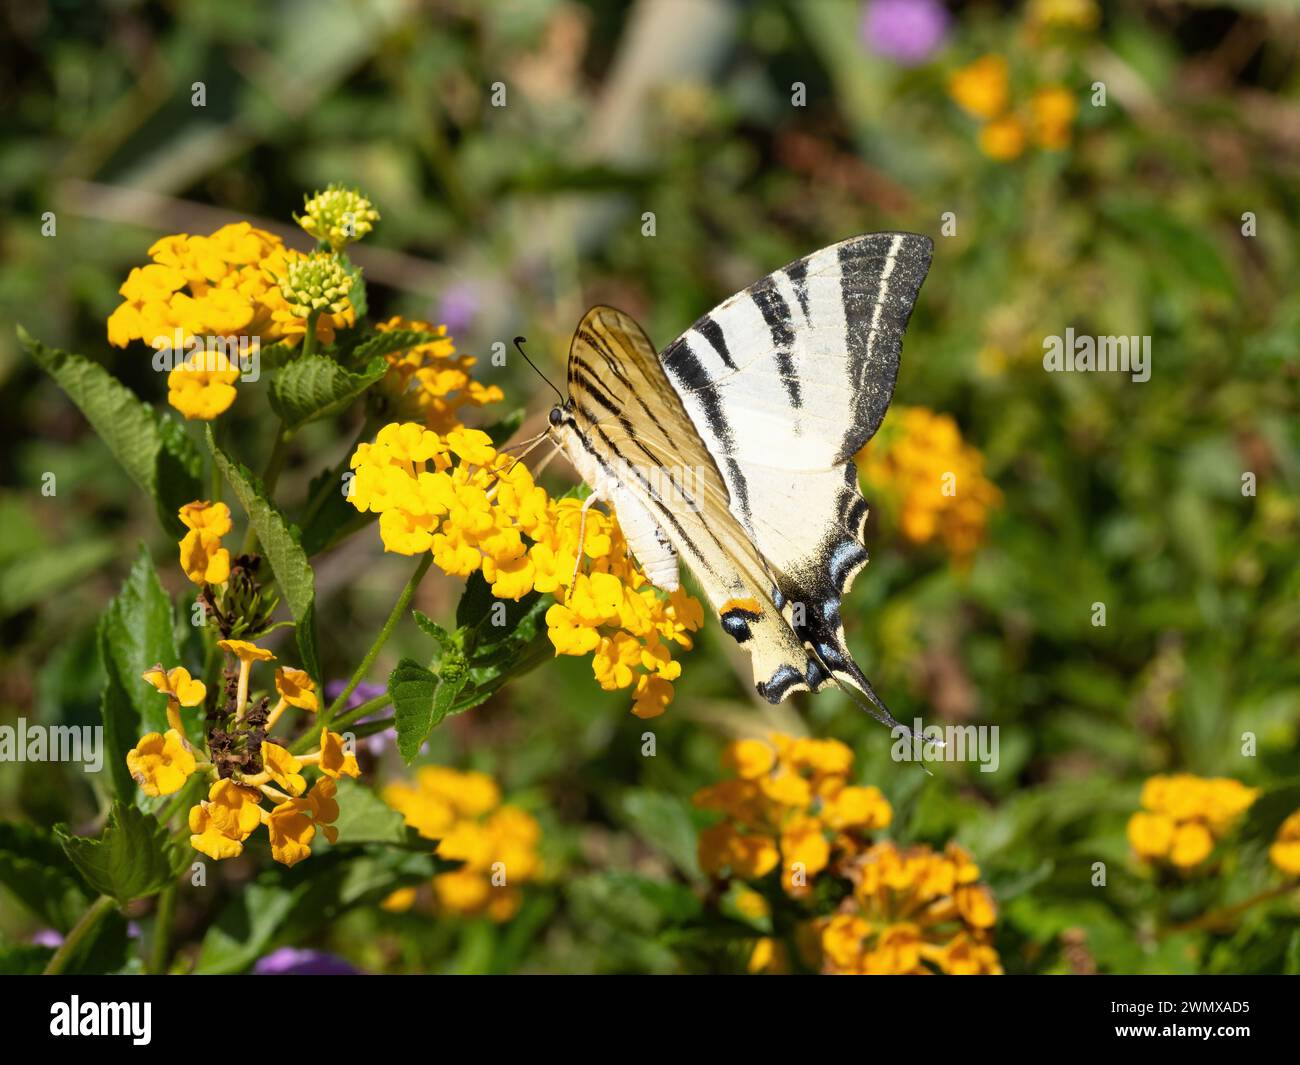 Le papillon à queue d'aronde (Iphiclides podalirius) boit du nectar et pollinise les fleurs de haie jaune (lantana depressa). Super macro. Extrême clos Banque D'Images